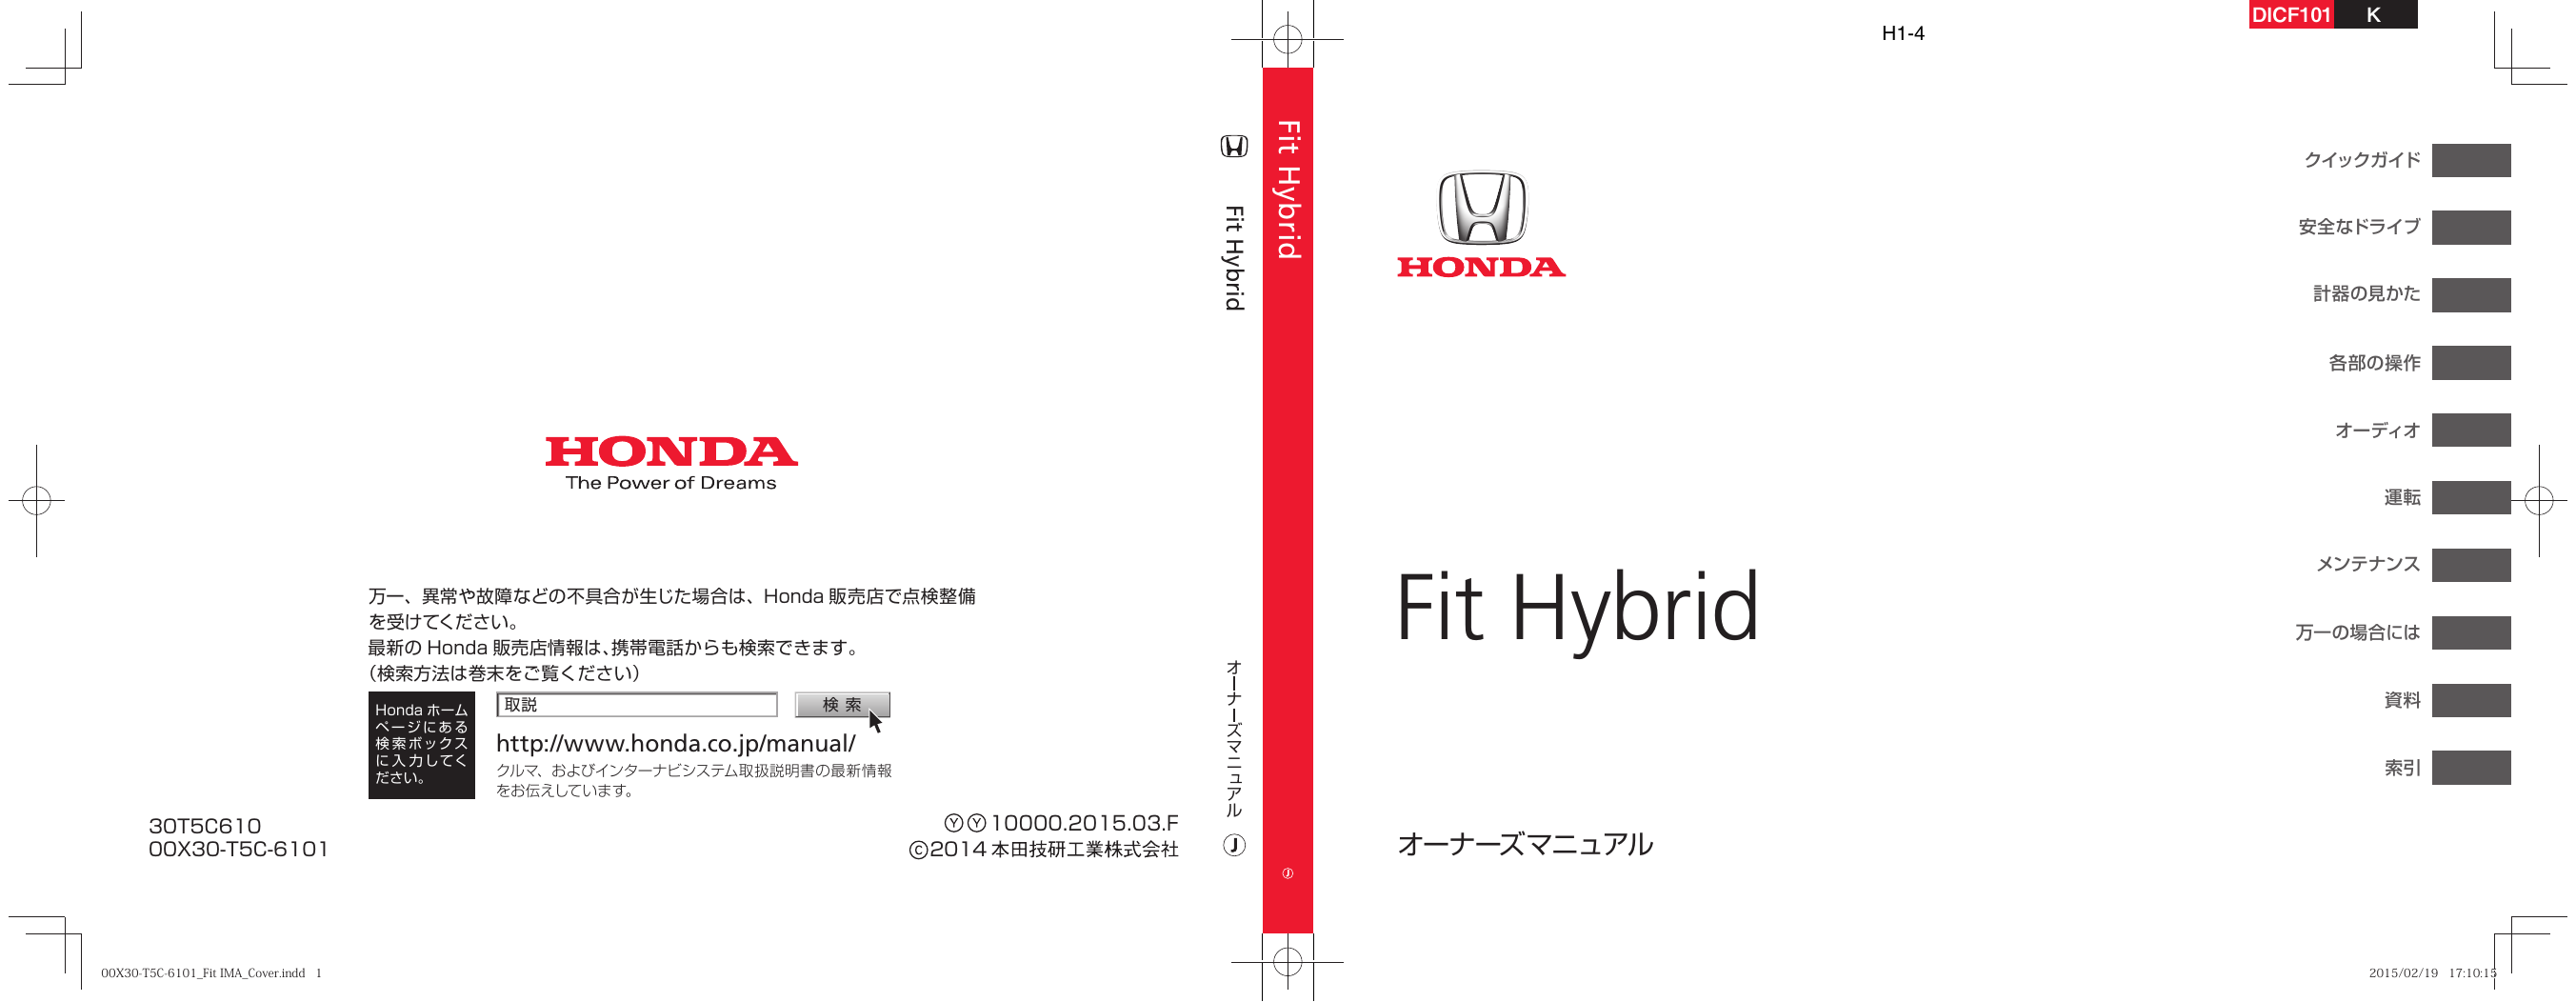 Honda Fit Hybrid 15 取扱説明書 Manualzz